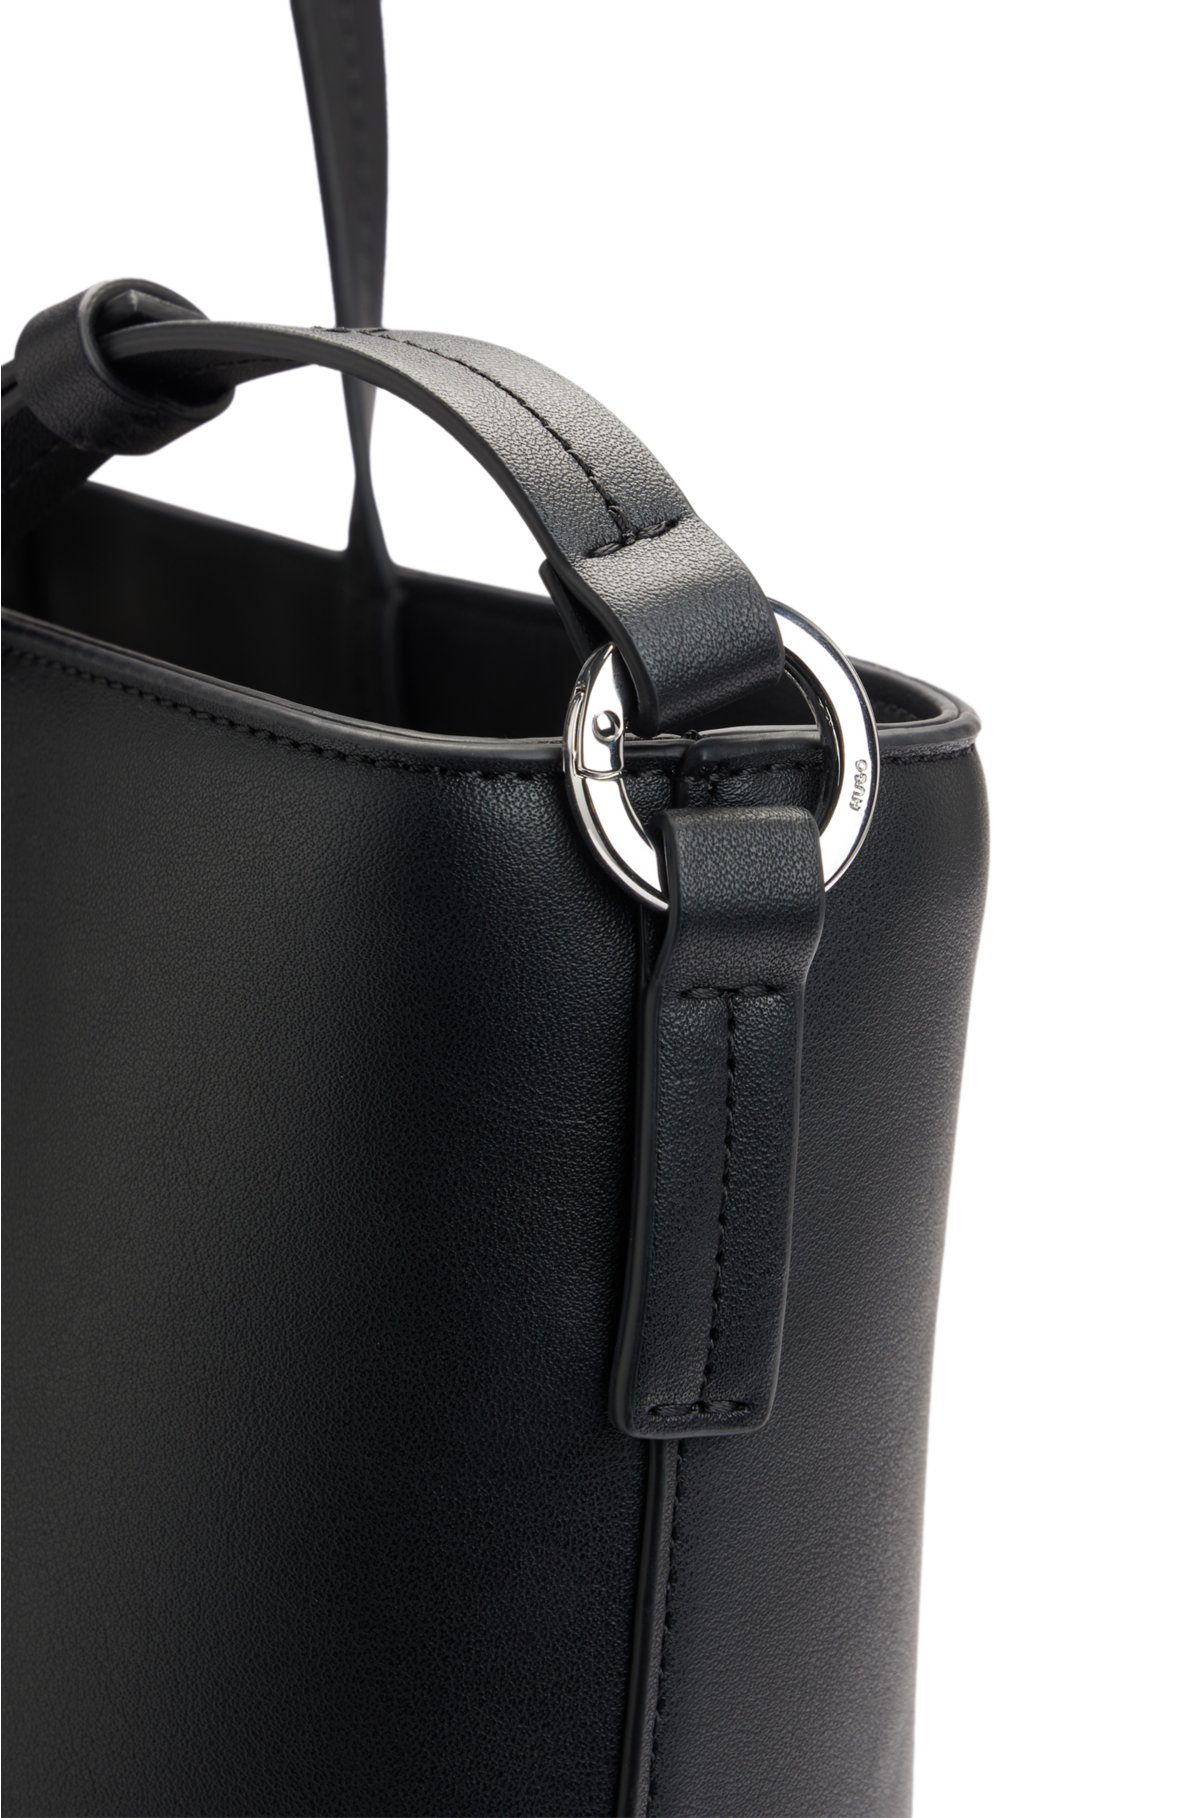 Las mejores ofertas en Joyería de Moda Negro de cuero Louis Vuitton